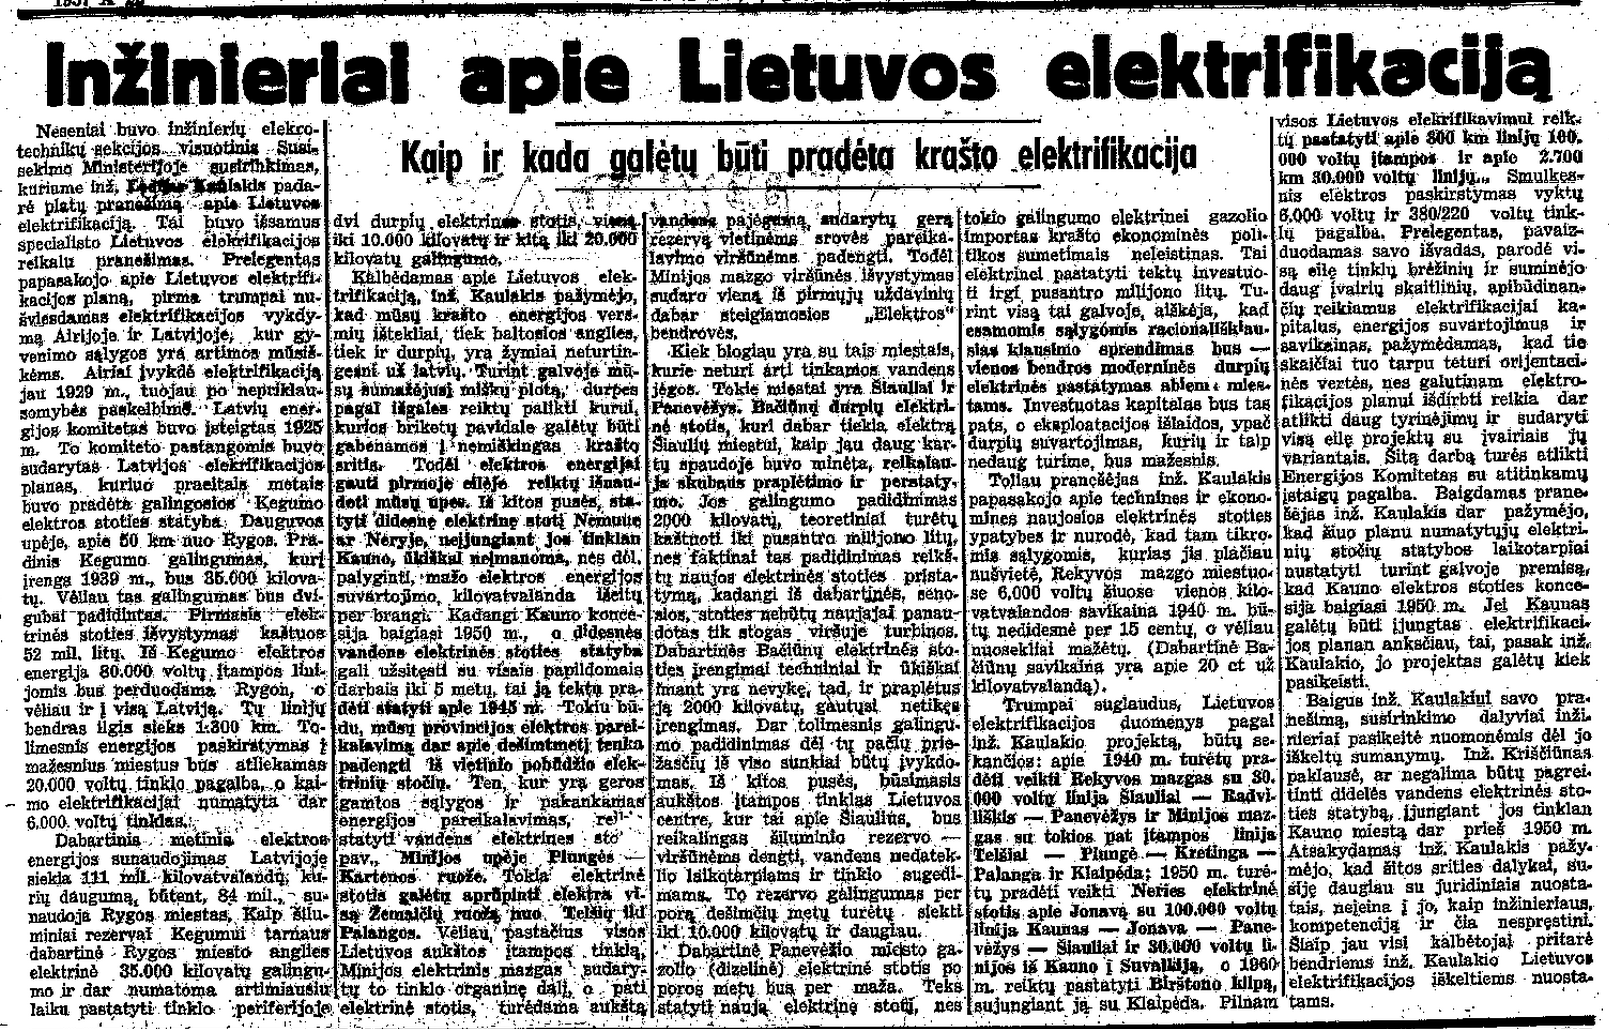 Inžinieriai apie Lietuvos elektrifikaciją